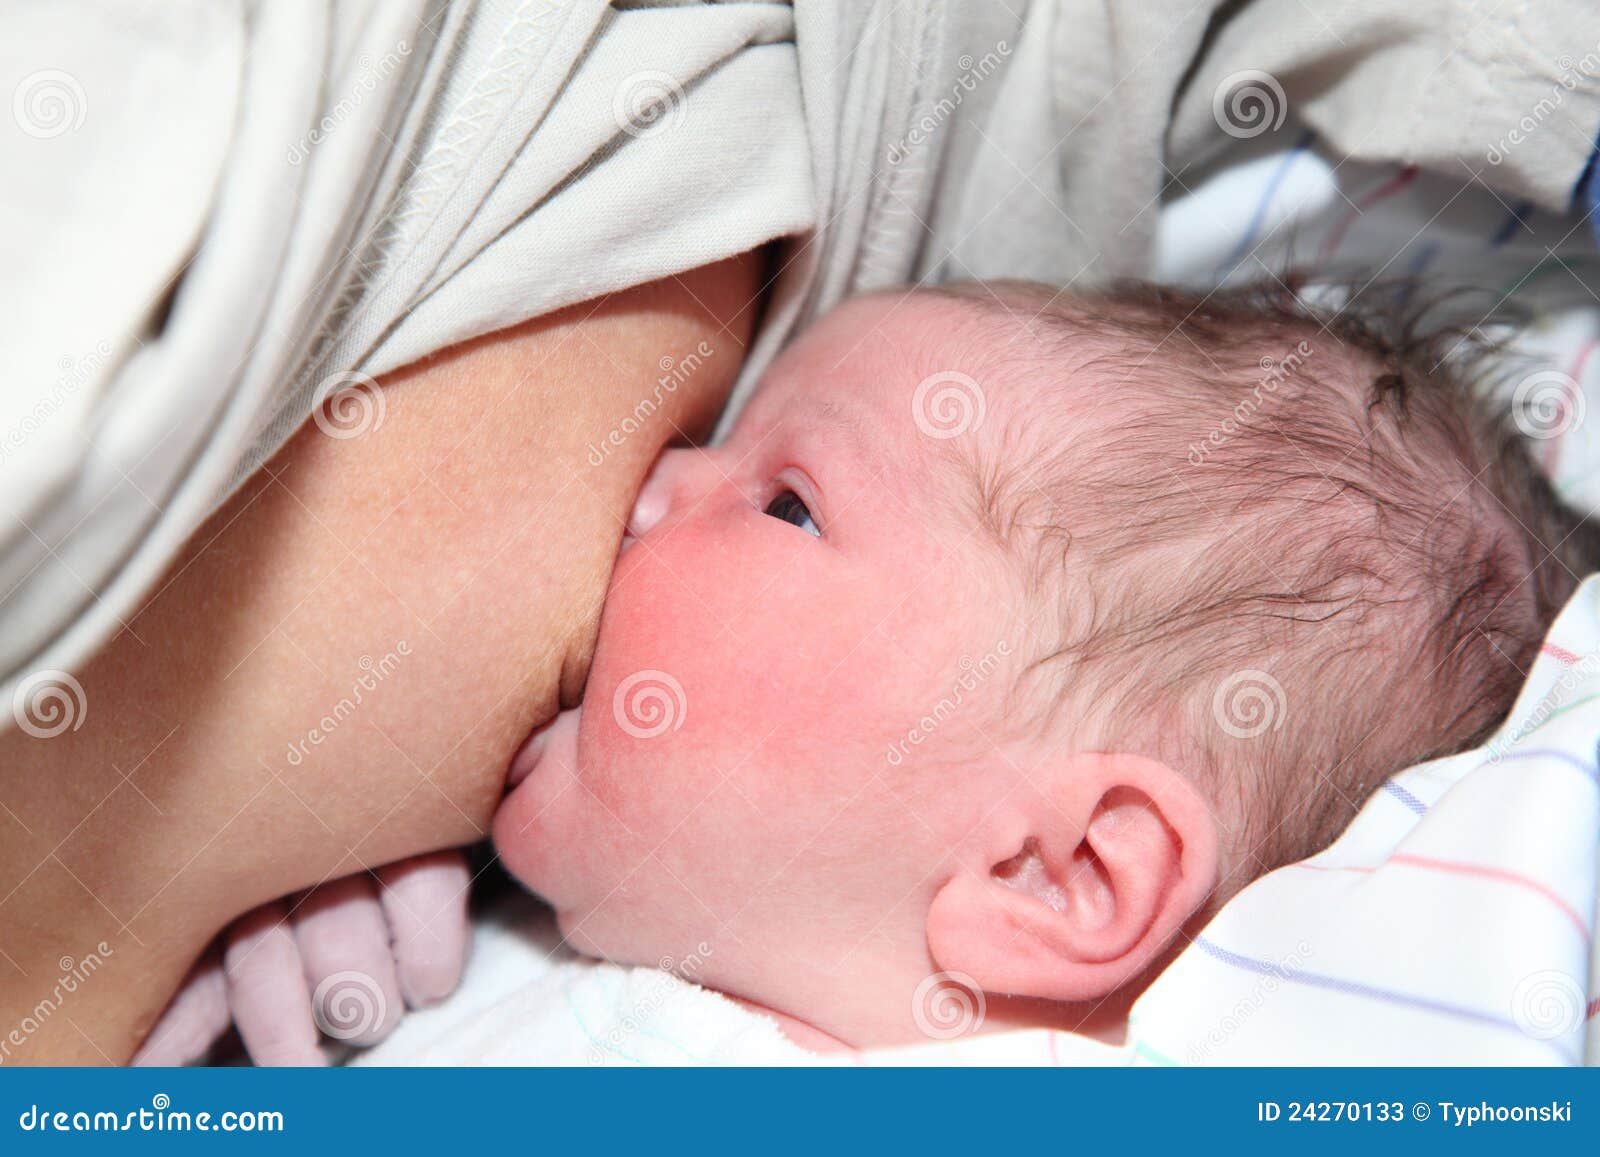 Плачет после кормления. Грудное вскармливание новорожденных в первые дни. Младенец плачет кормление грудью. Грудь у новорожденной девочки.